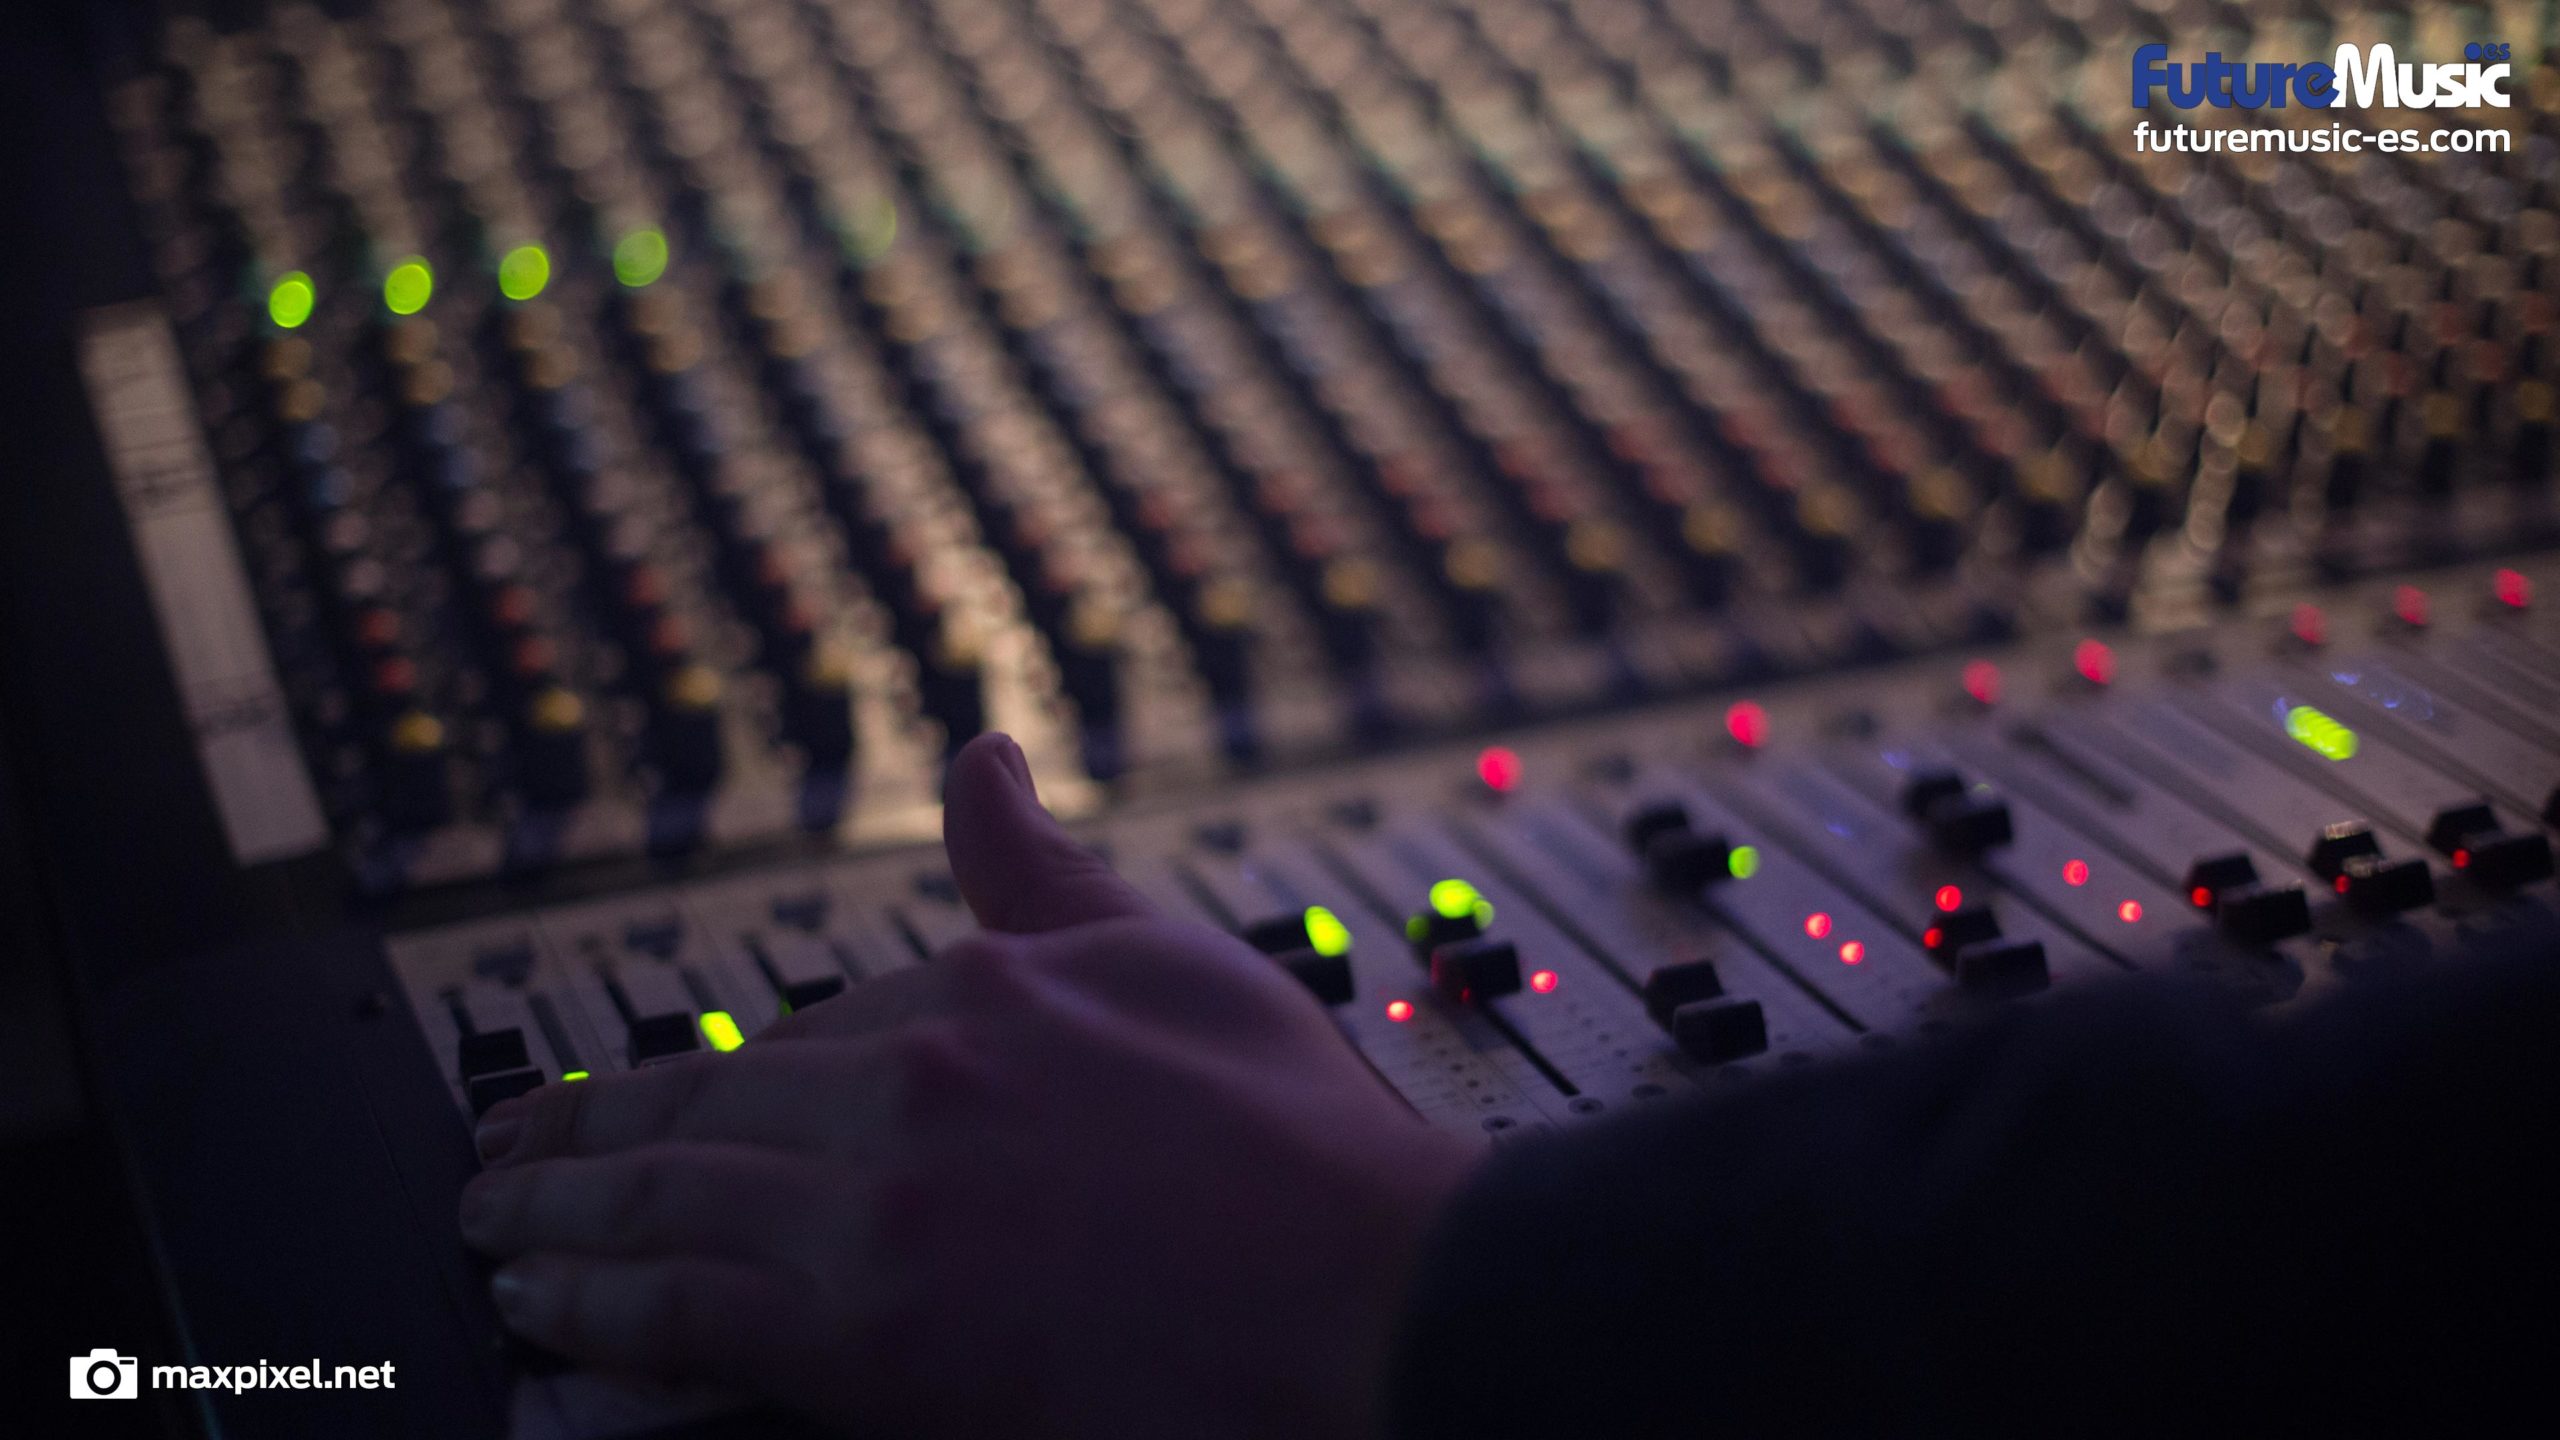 Future Music, fondos de pantalla gratis para productores y DJs -técnica de sonido